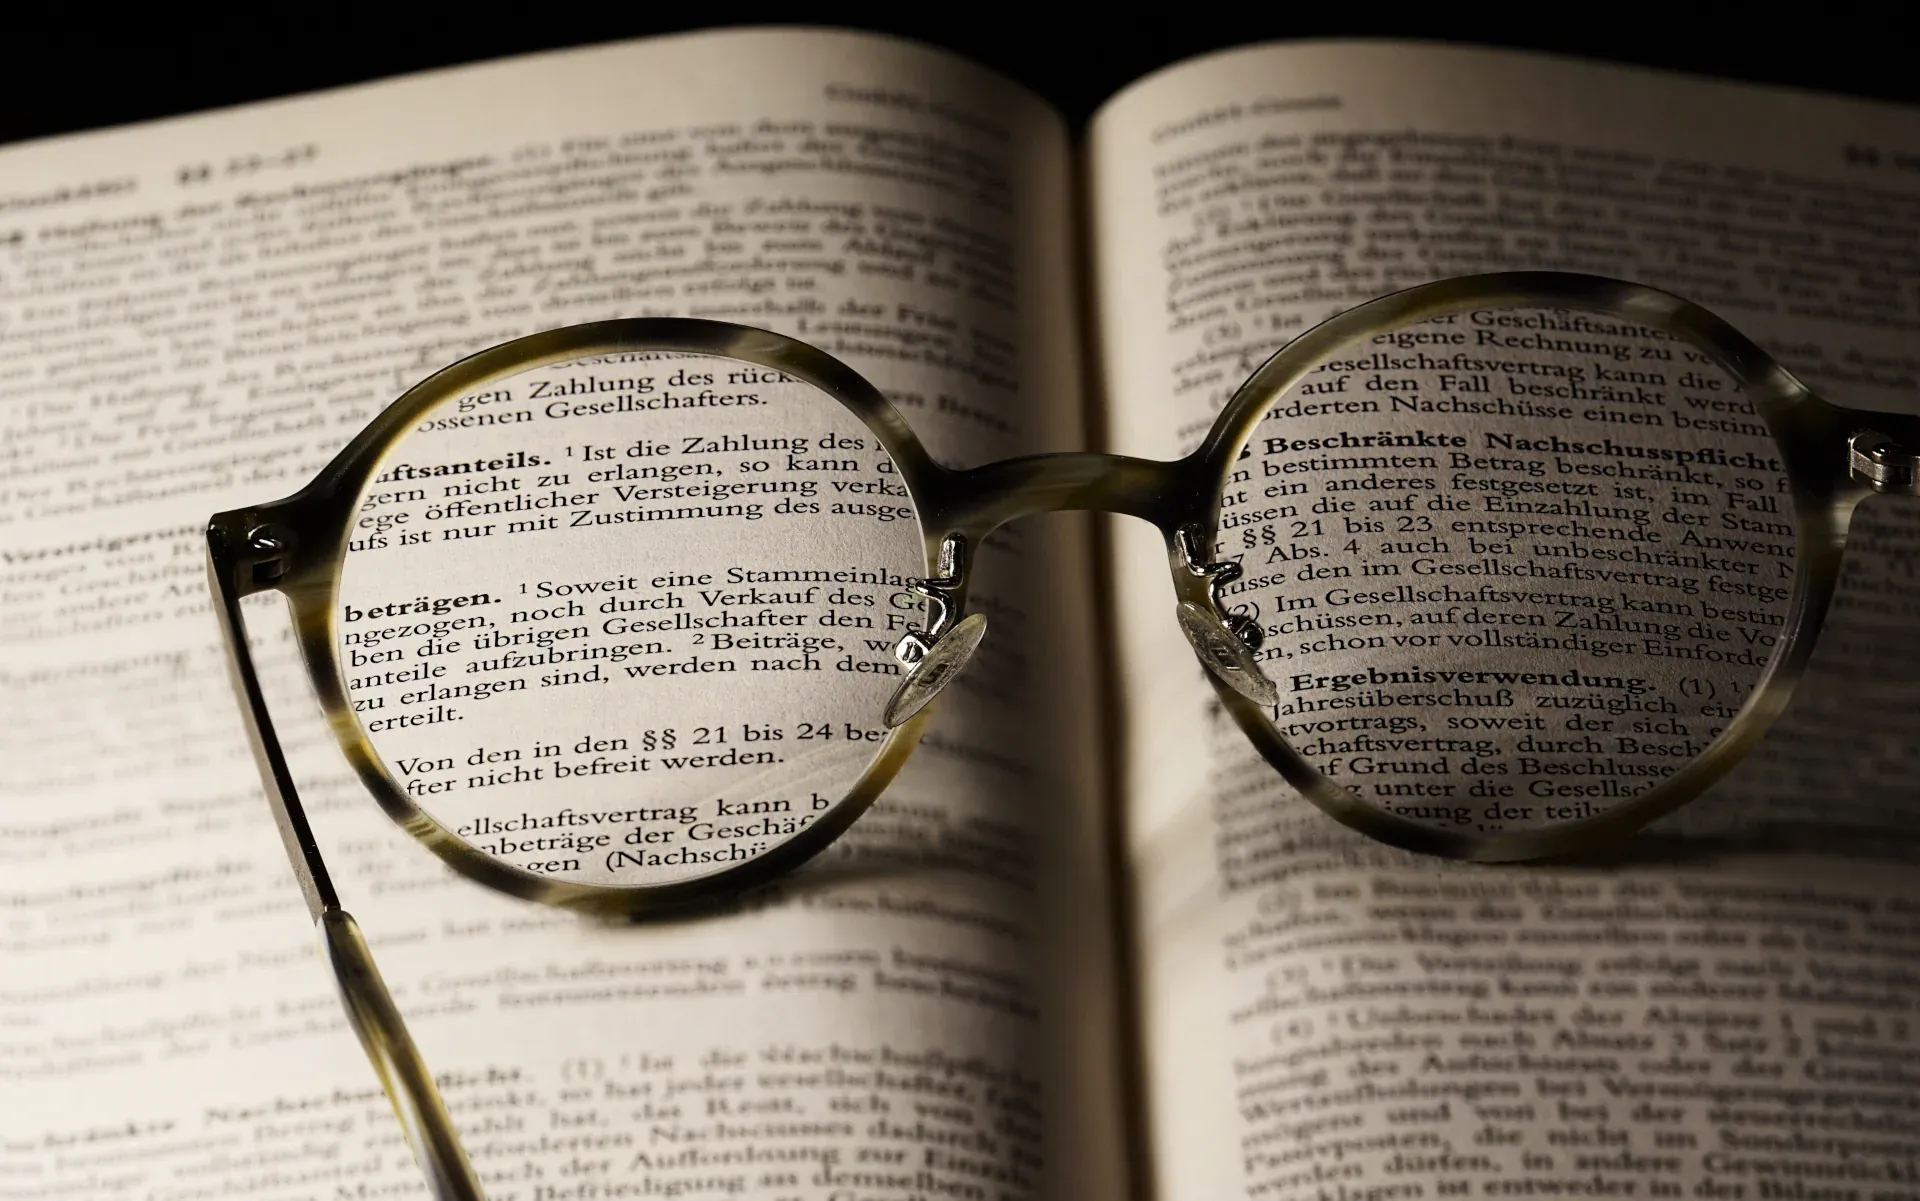 Une paire de lunettes posée sur un livre ouvert